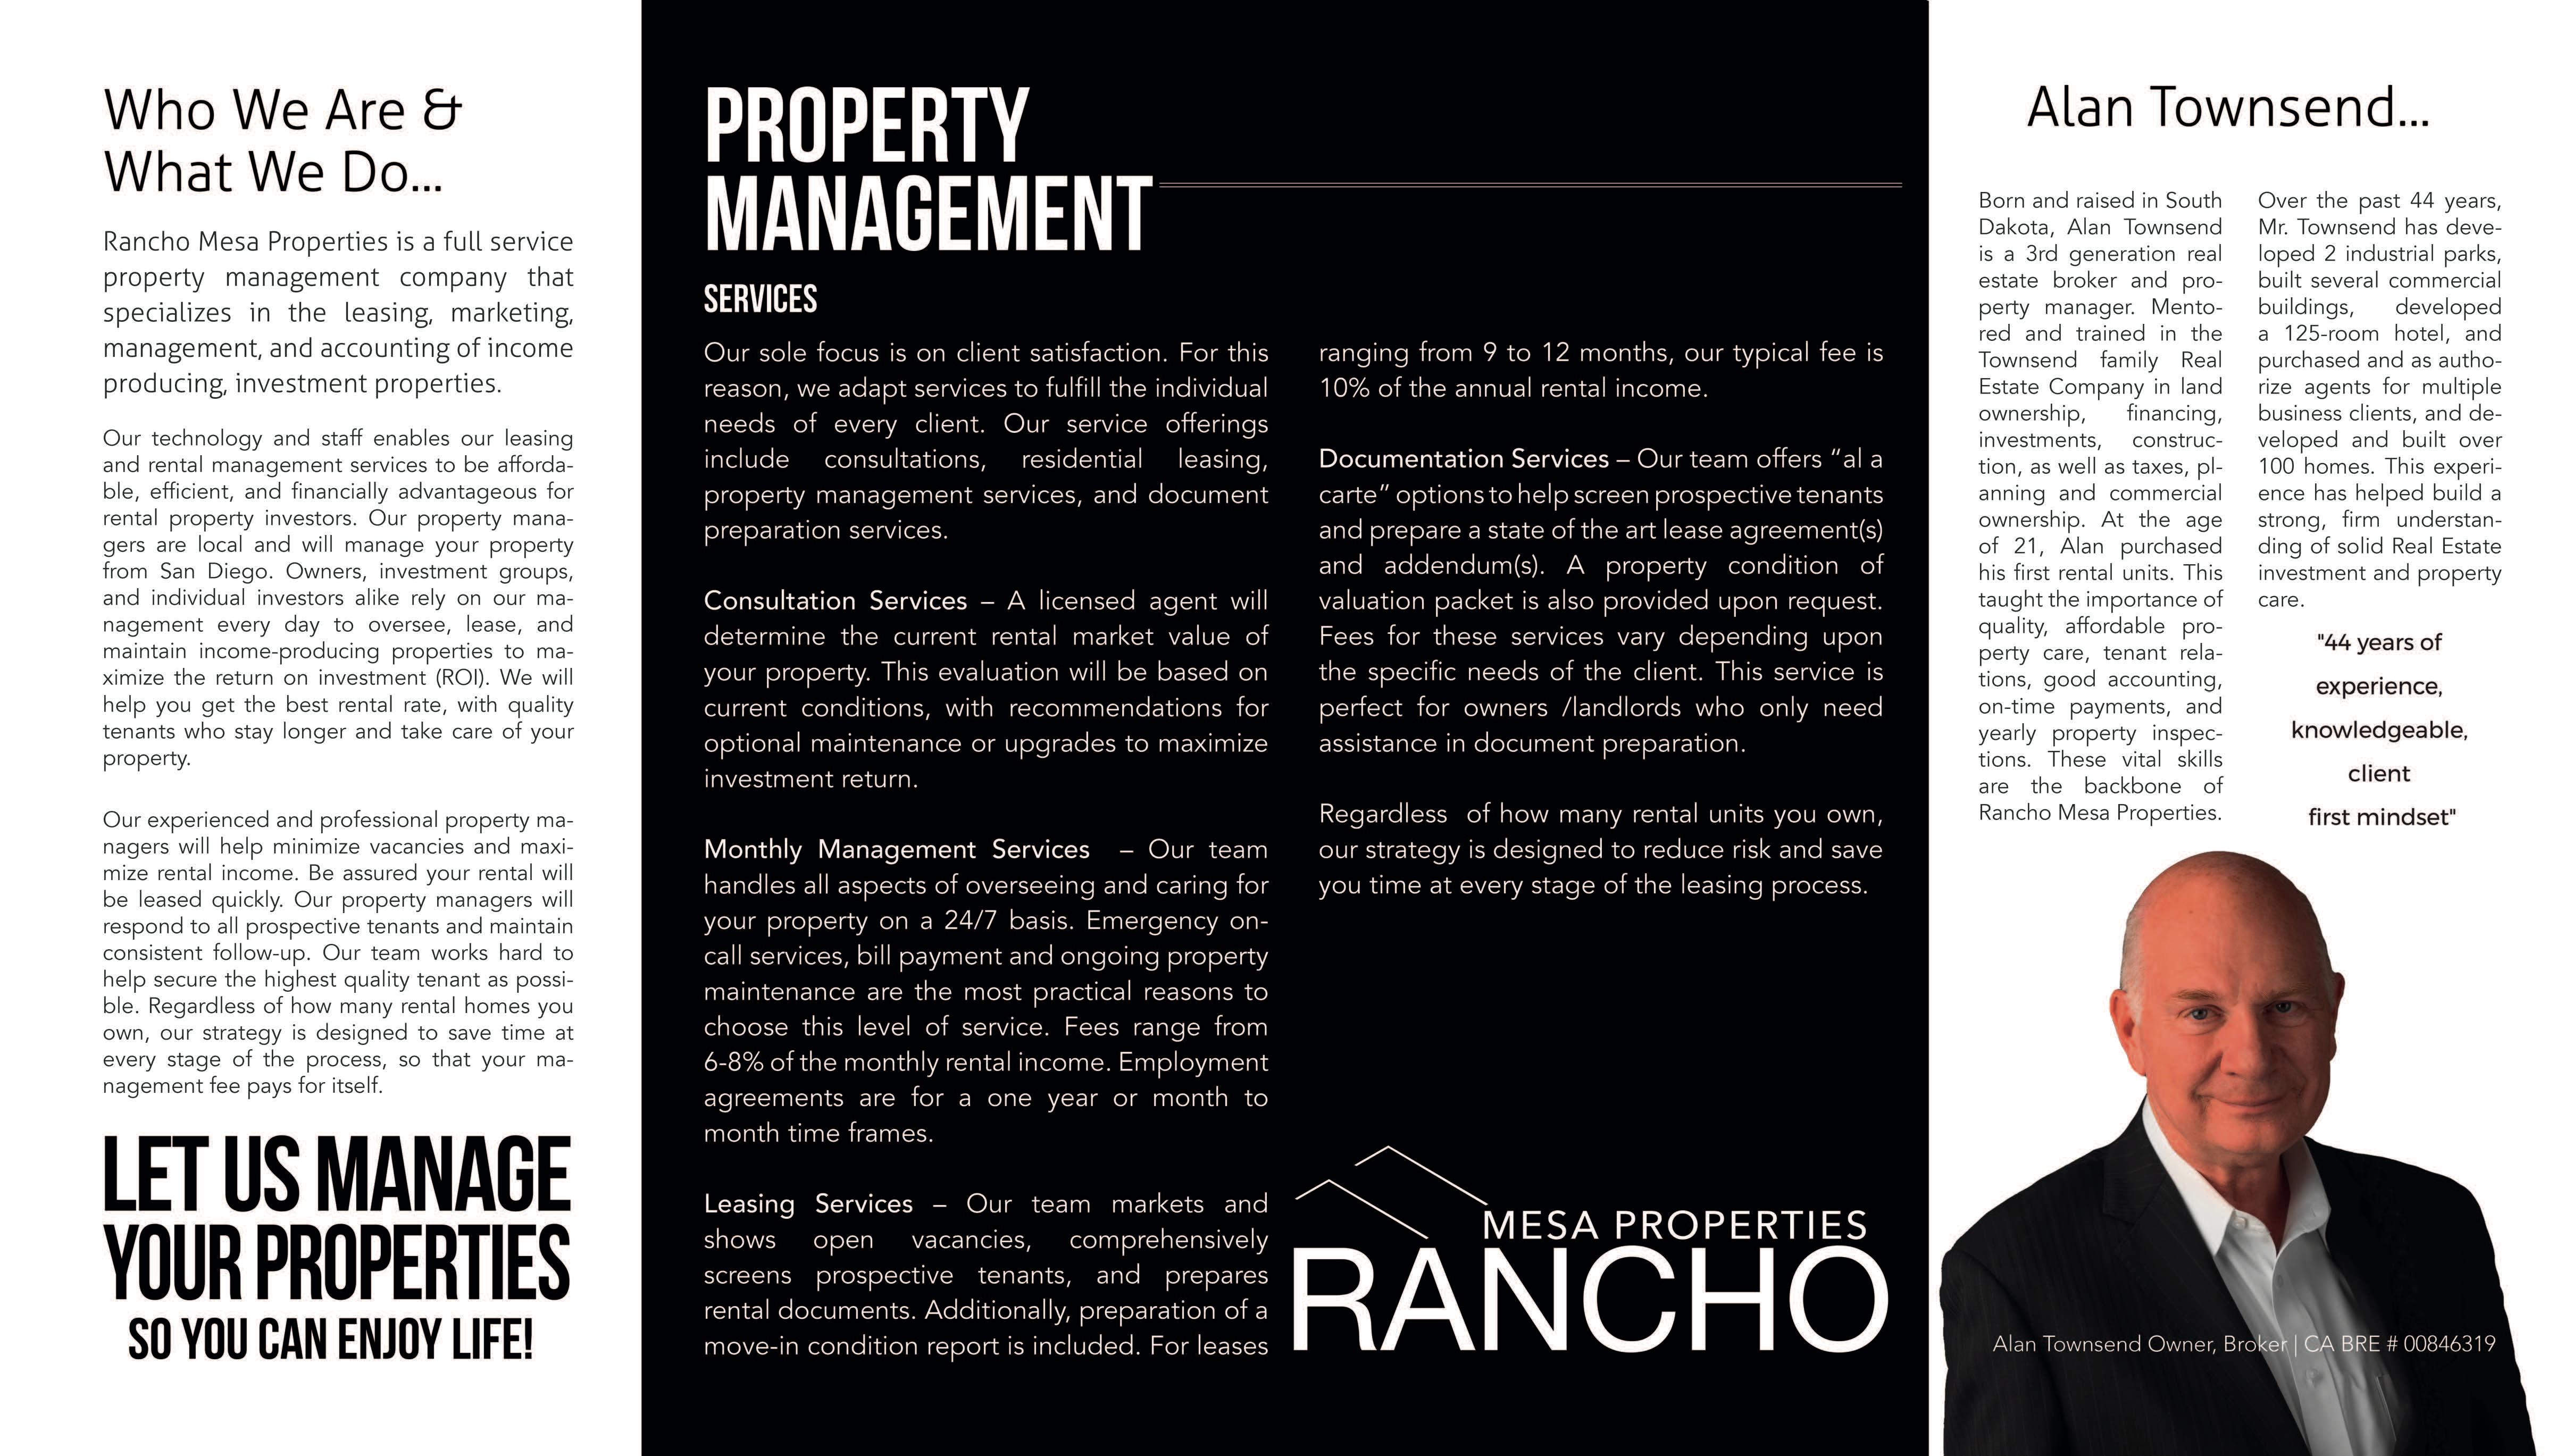 Rancho Mesa Properties Photo